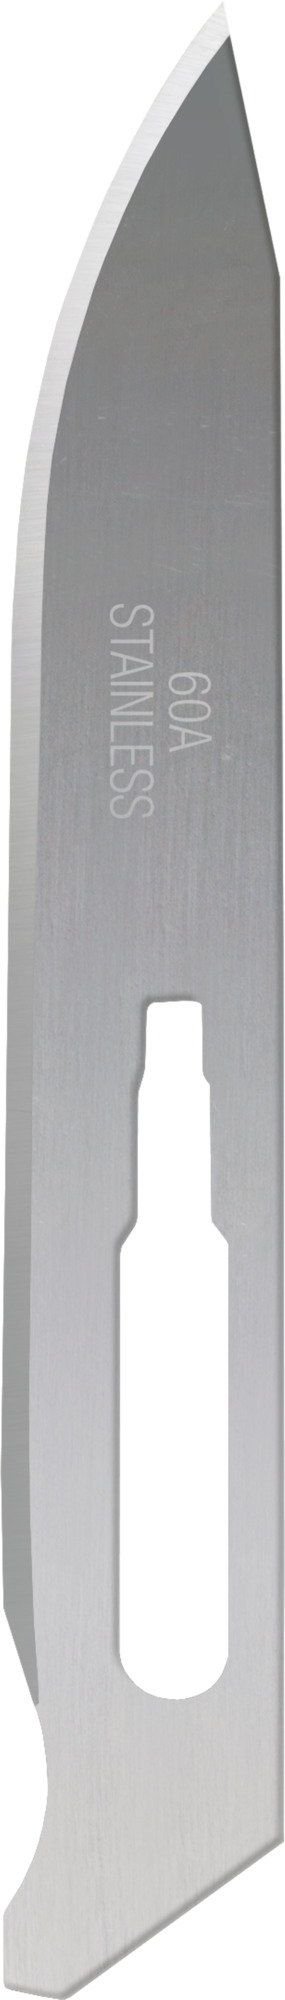 Havalon Piranta Stainless Steel Blades #60A - One Dozen